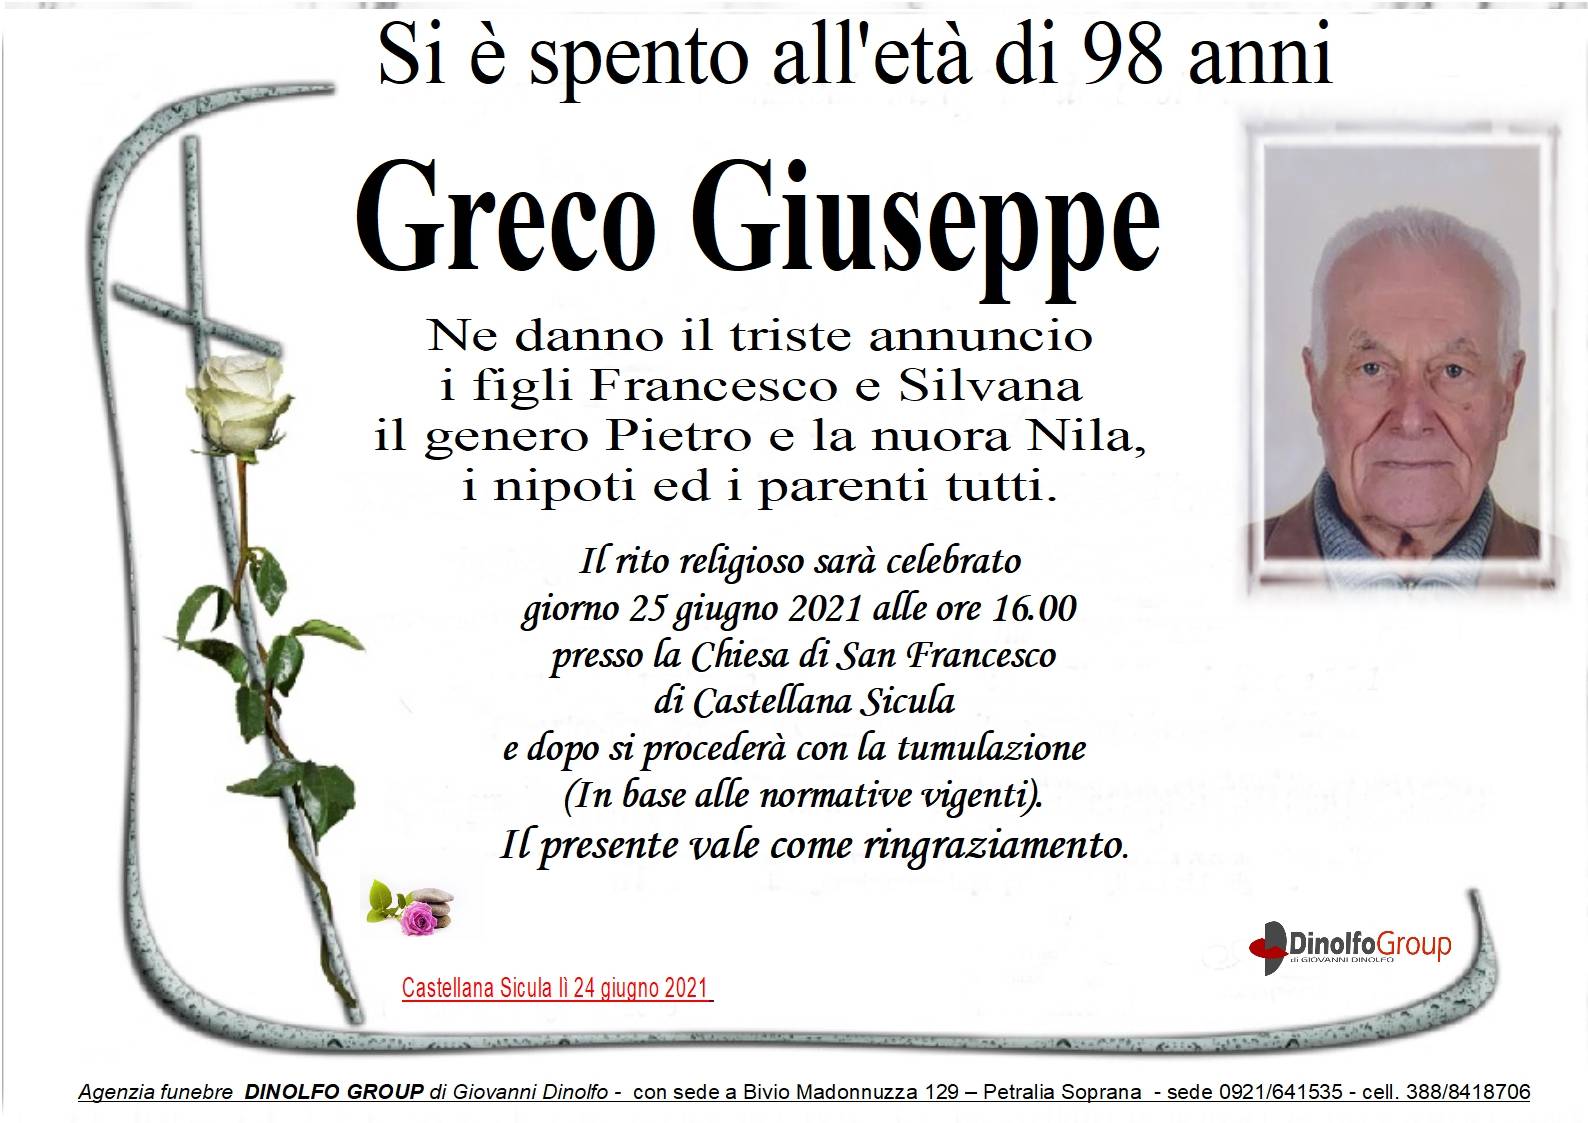 Giuseppe Greco